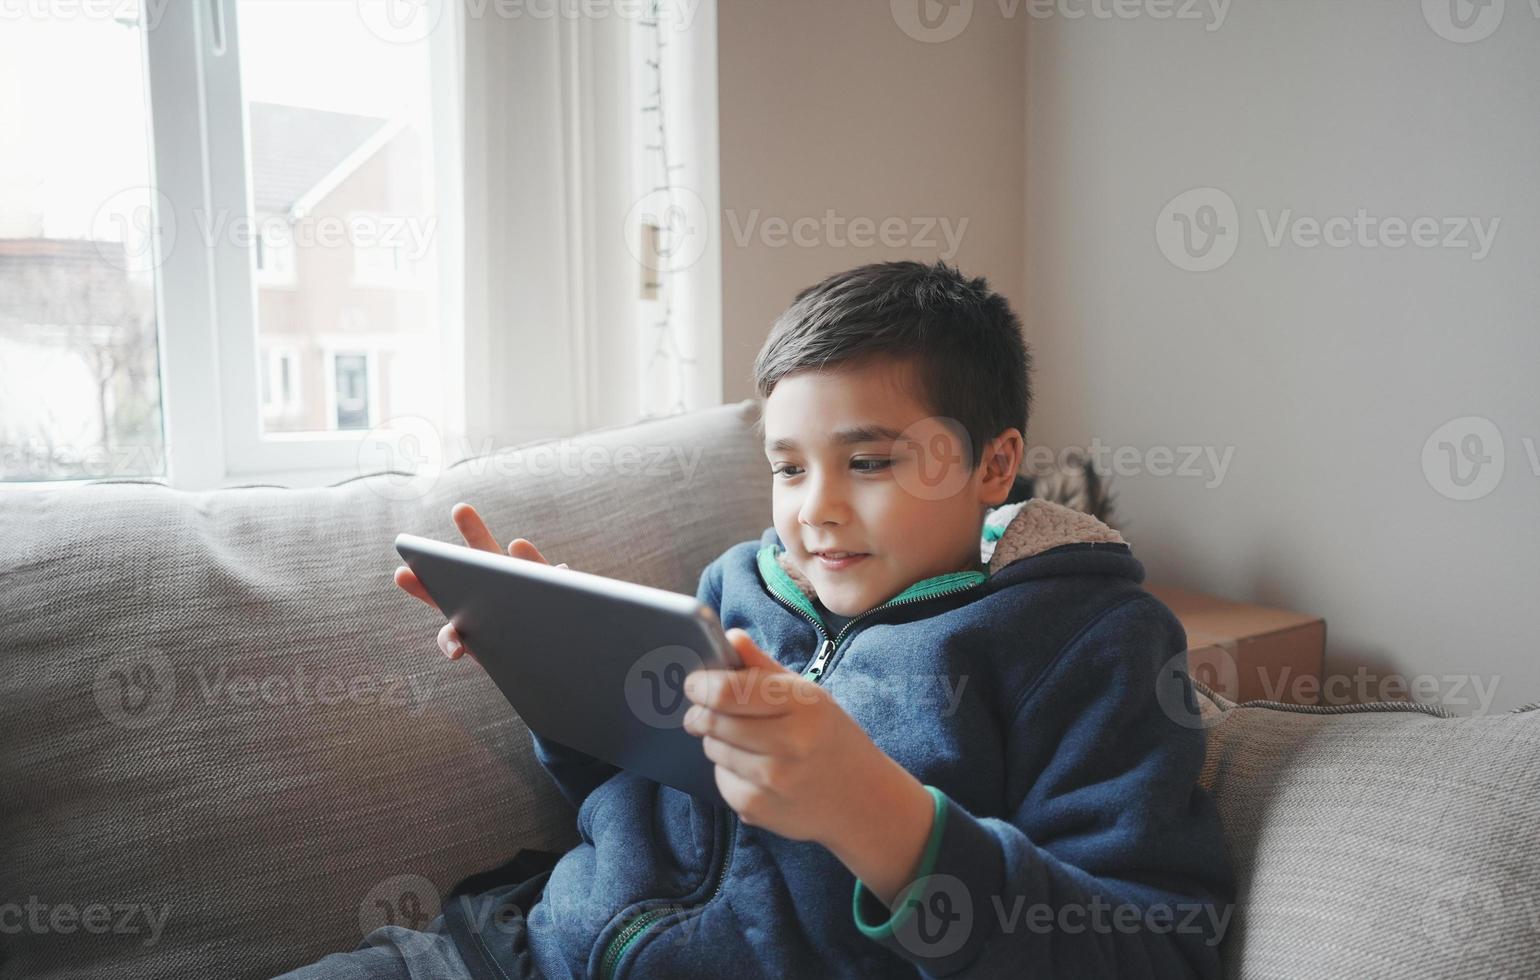 conceito de educação, garoto da escola segurando o tablet lendo e-book para lição de casa, retrato criança feliz jogando jogo online na internet com amigos, menino assistindo desenho animado no teclado digital, garoto sentado no sofá foto